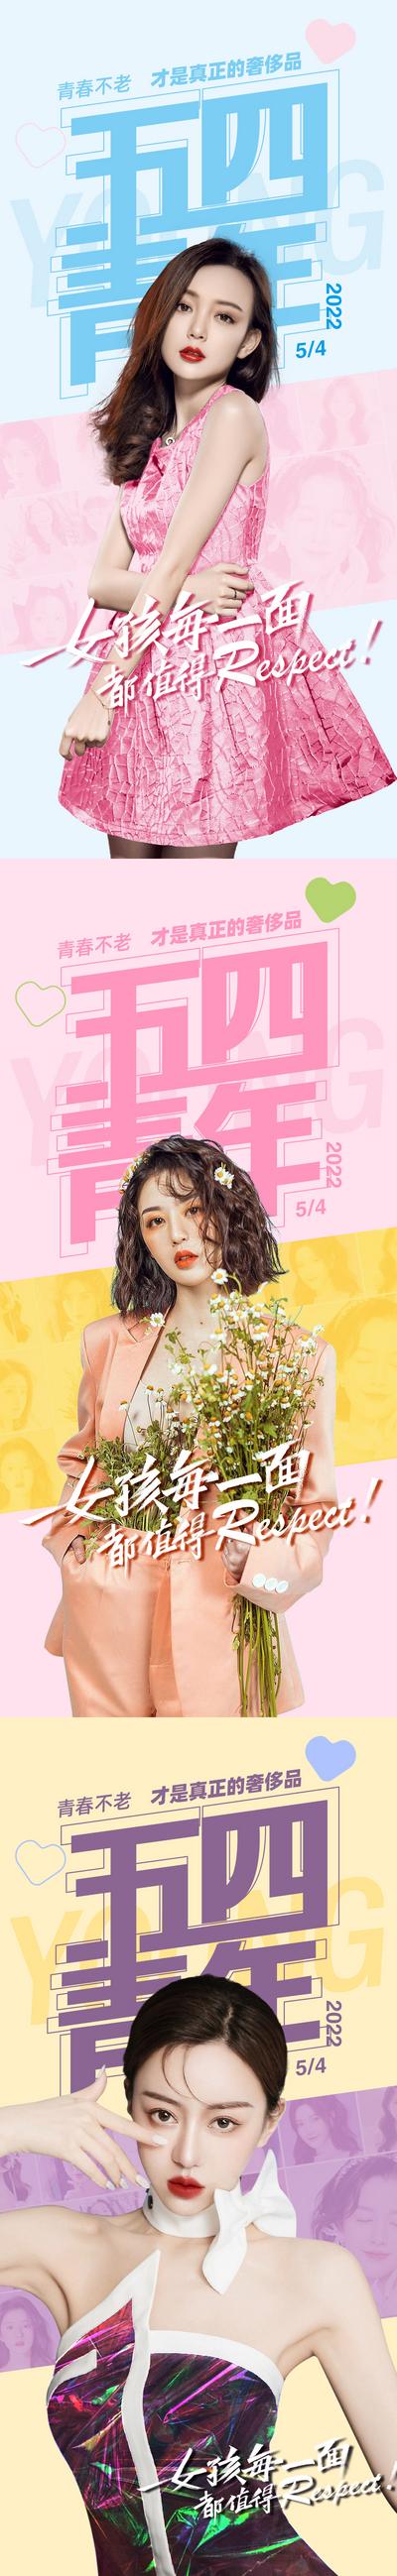 南门网 广告 海报 医美 五四 青年节 人物 系列 清新